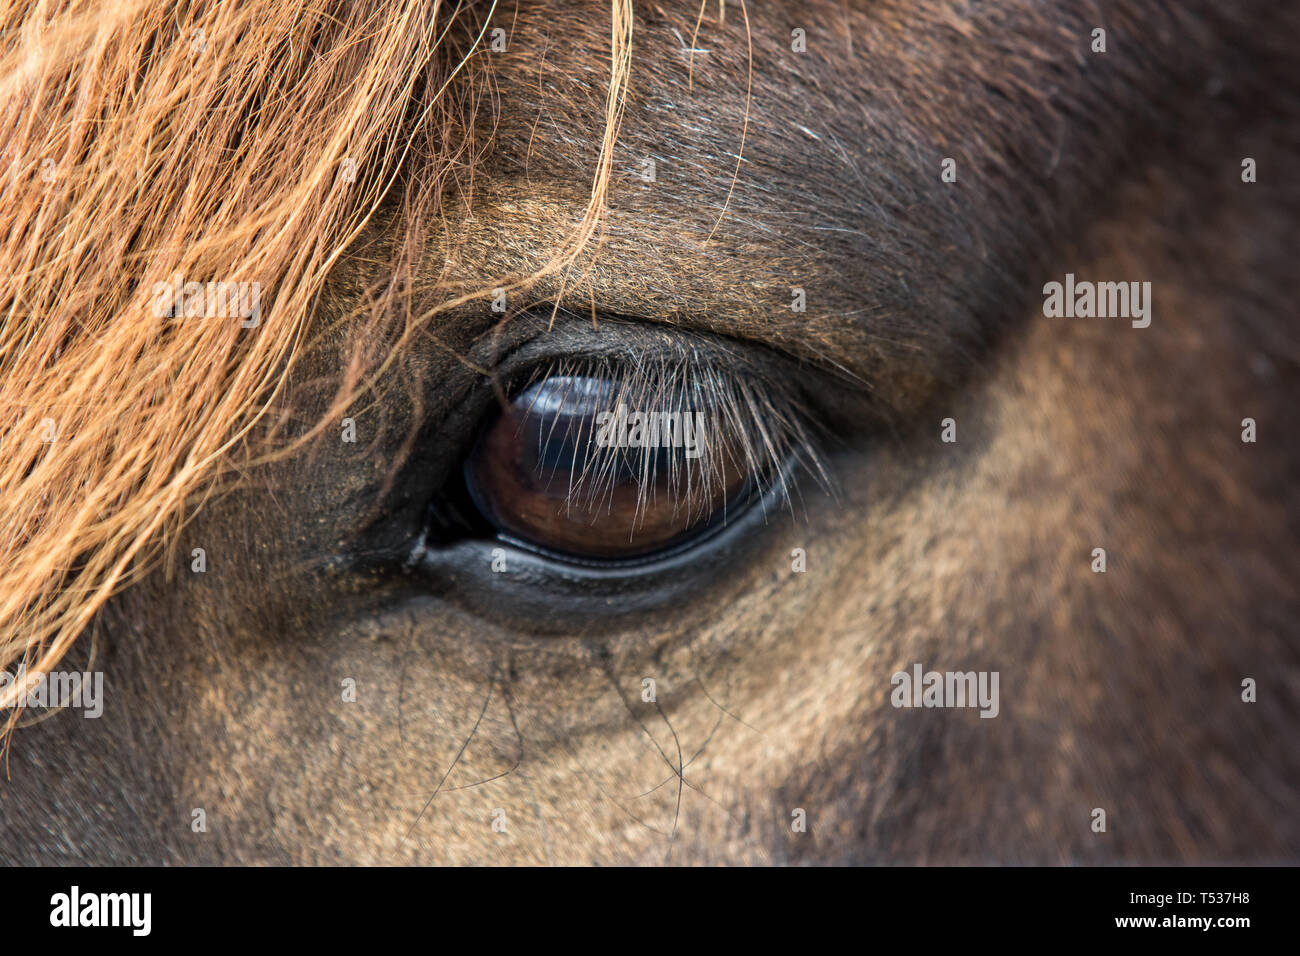 Close up beautiful big bright dark eye of icelandic horse with with eyelashes and an orange fringe Stock Photo